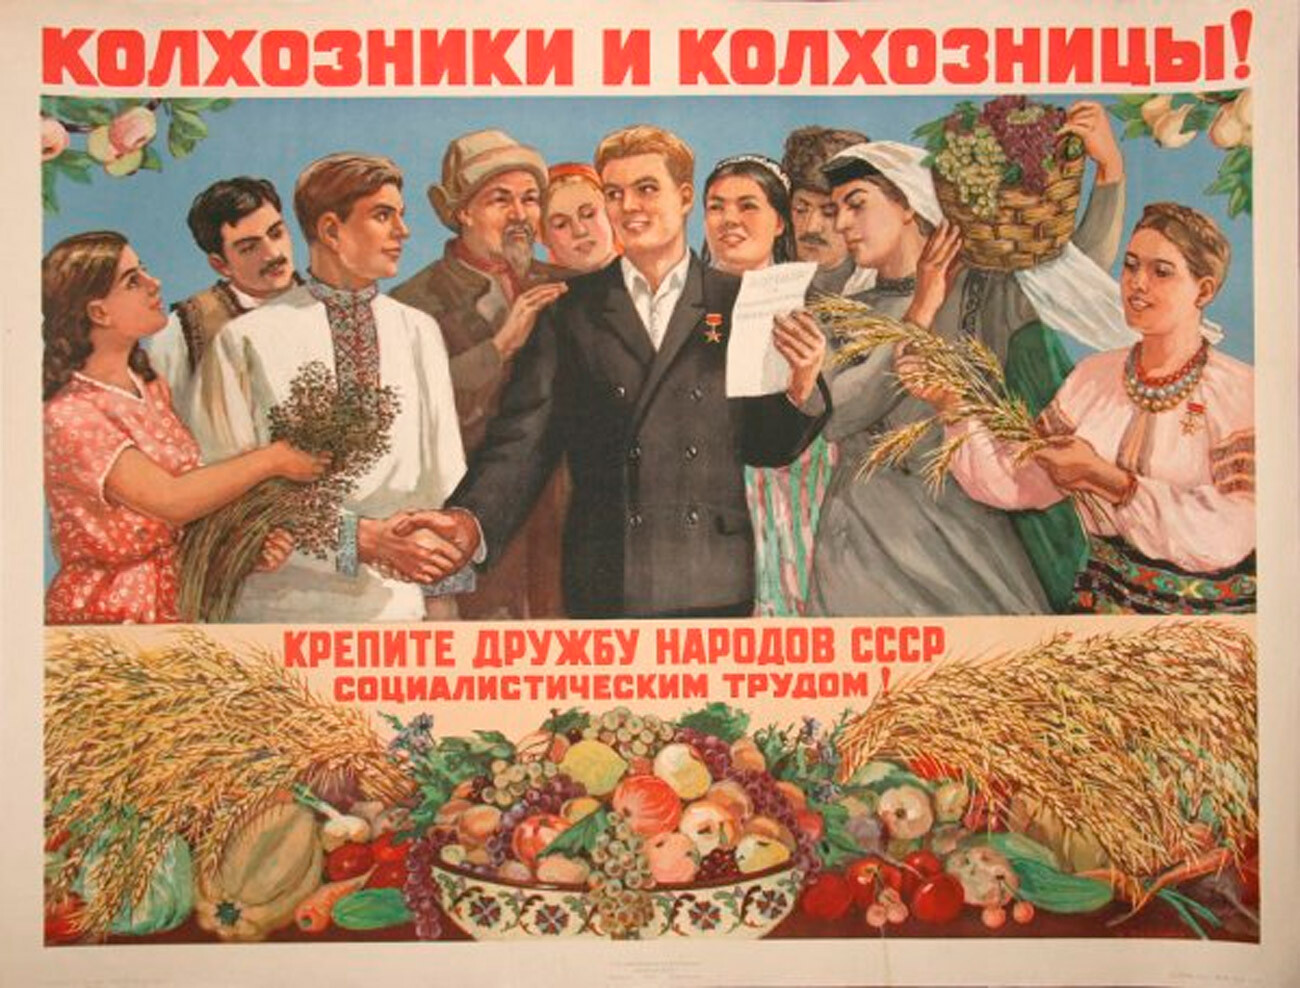 コルホーズ男性とコルホーズ女性よ！ 社会主義労働でソビエト諸民族の友情を固めよ！